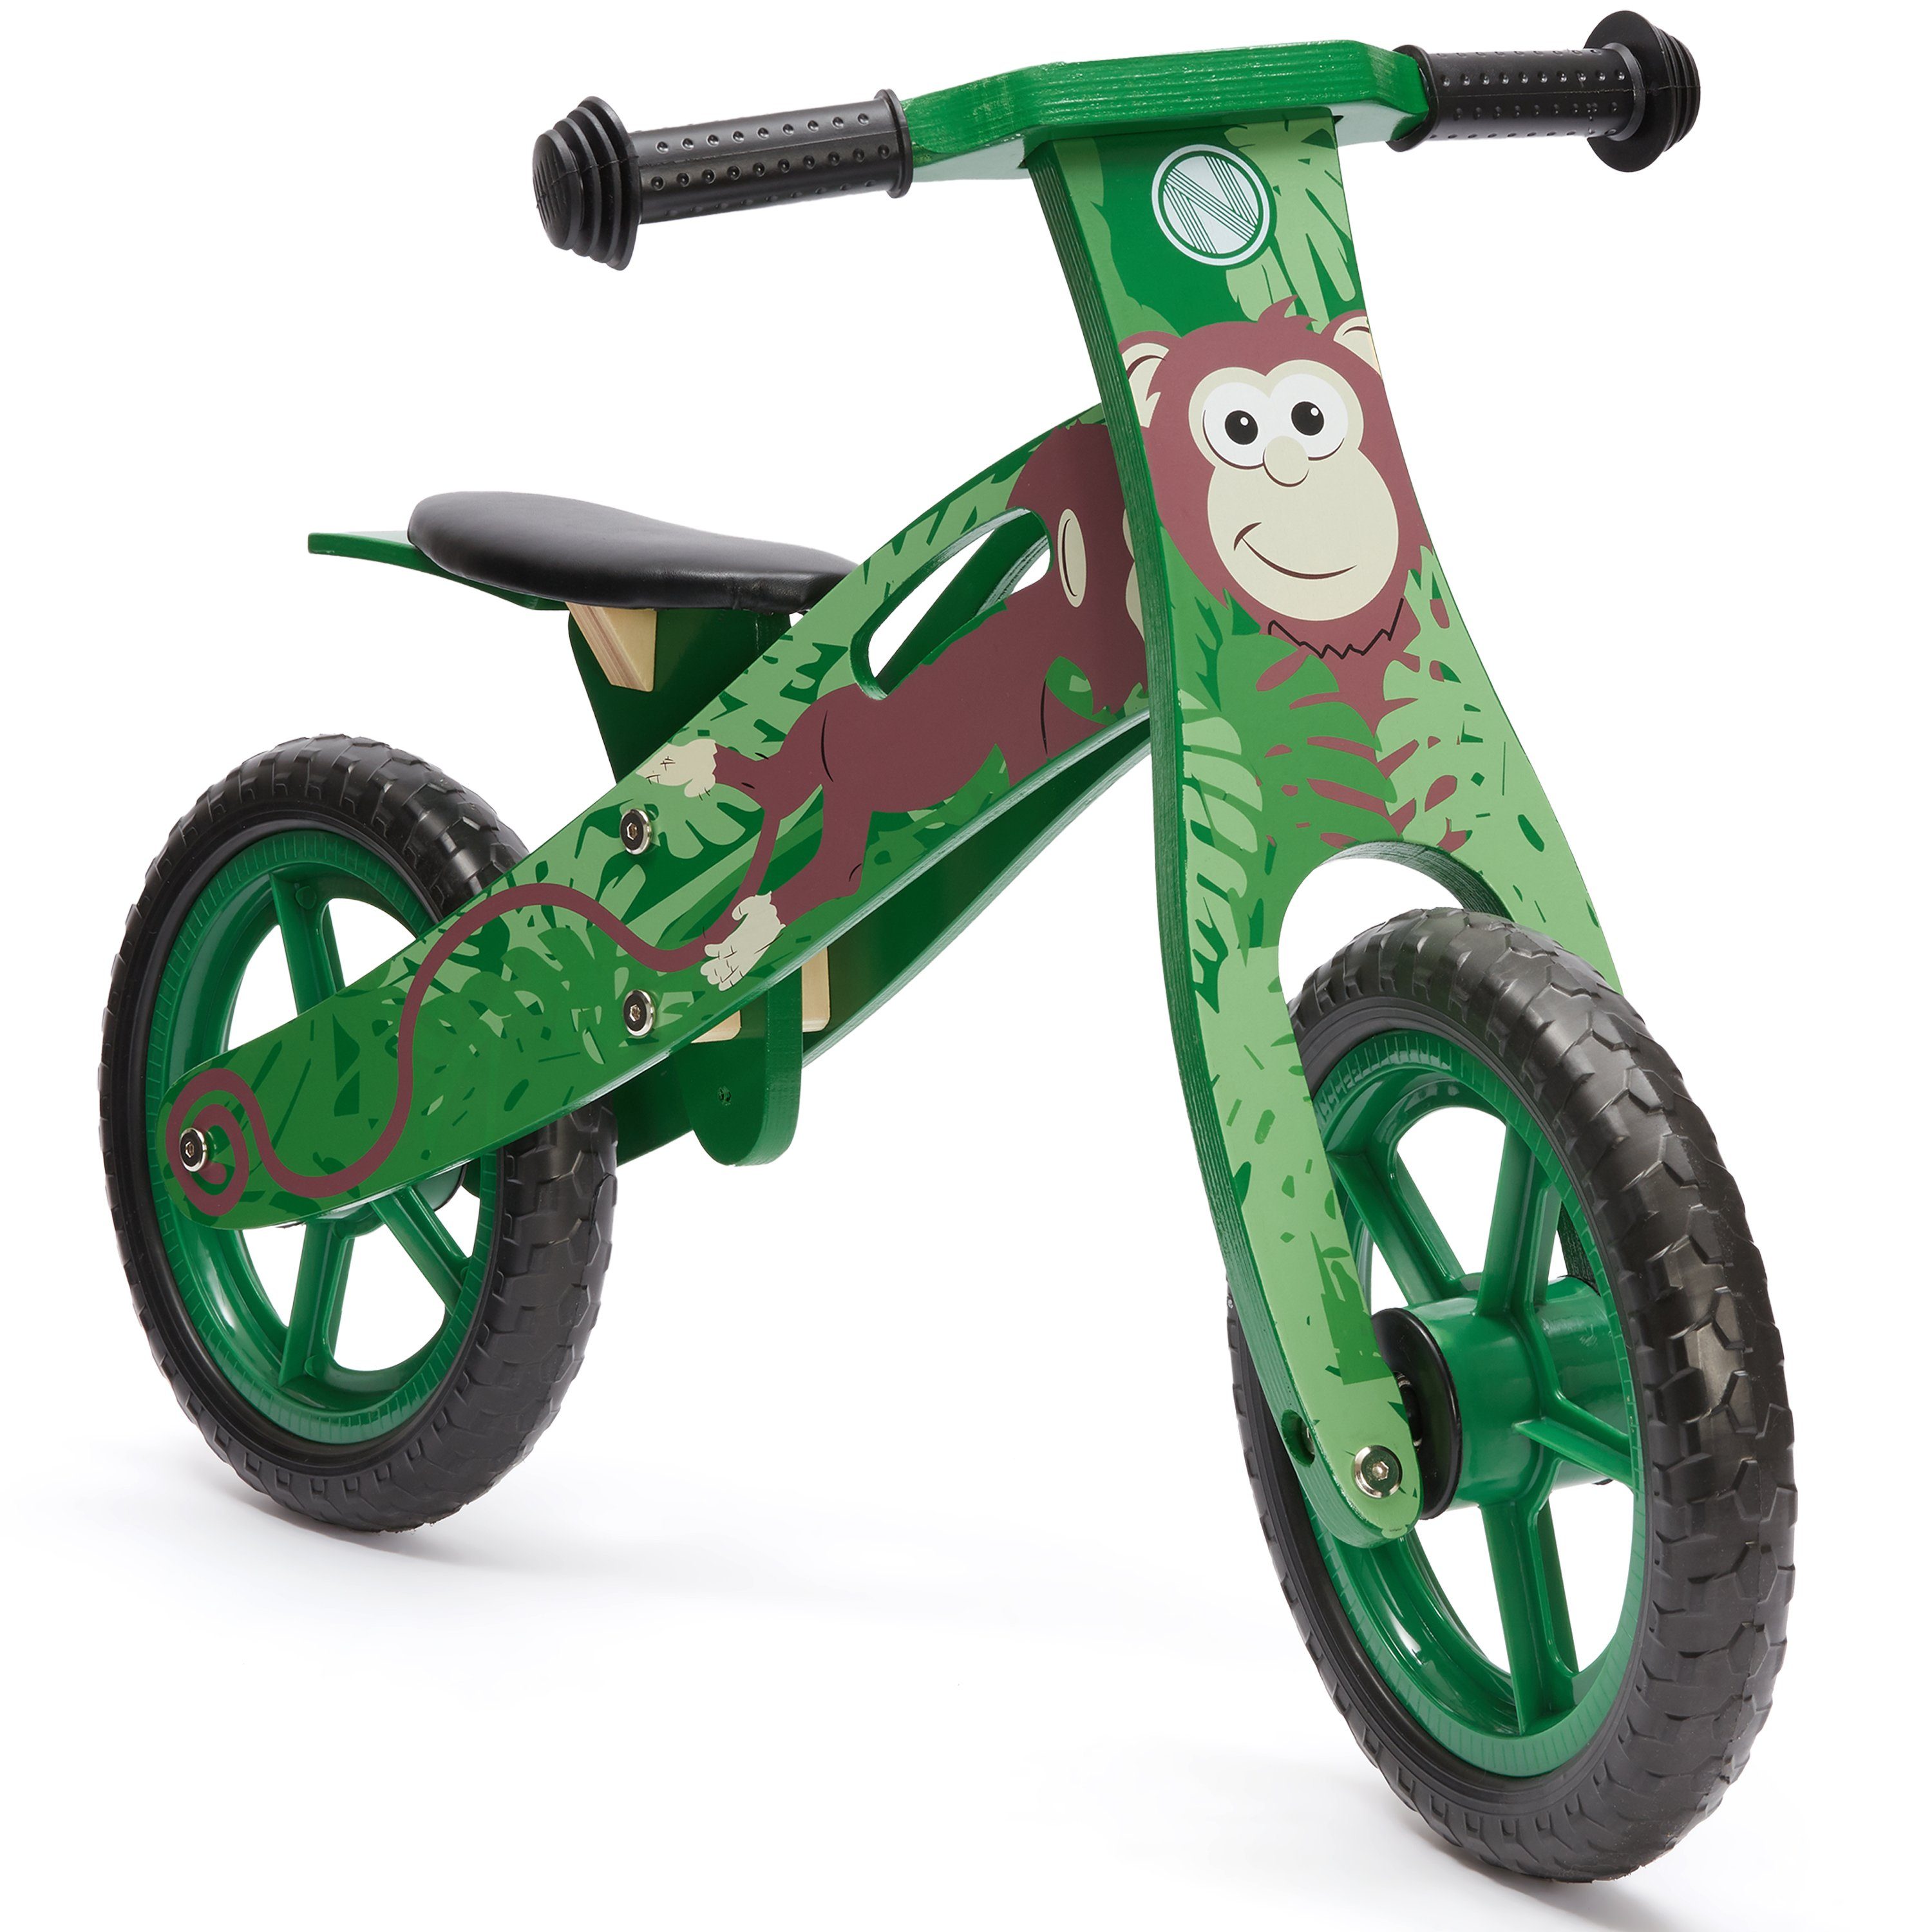 wuuhoo Laufrad Monkey aus Holz, mitwachsend im Dschungel Design, für  Mädchen und Jungen ab 3 Jahren I mitwachsend ergonomisch I 12 Zoll  Lauflernrad höhenverstellbar und flexibel